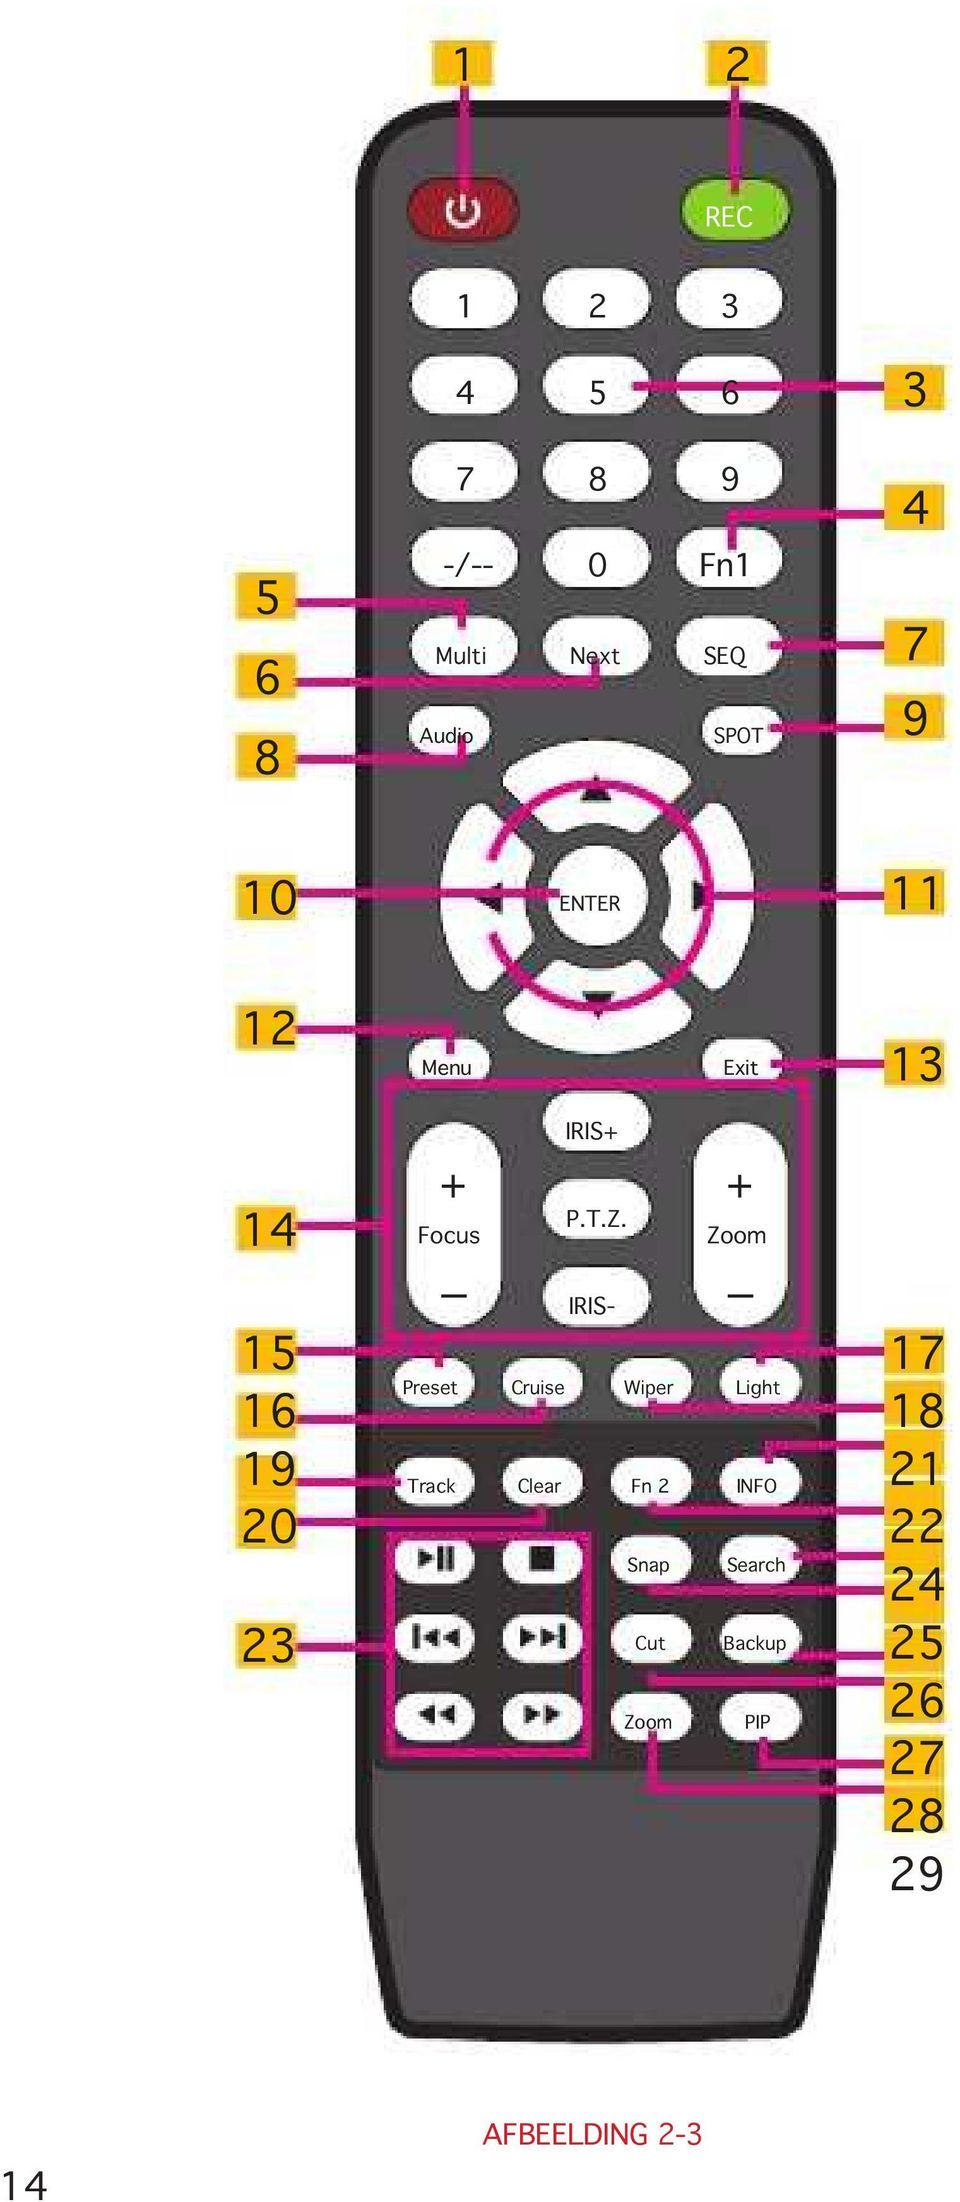 Zoom IRIS- Cruise Wiper 14 15 16 19 20 23 Focus _ Preset _ Light Track